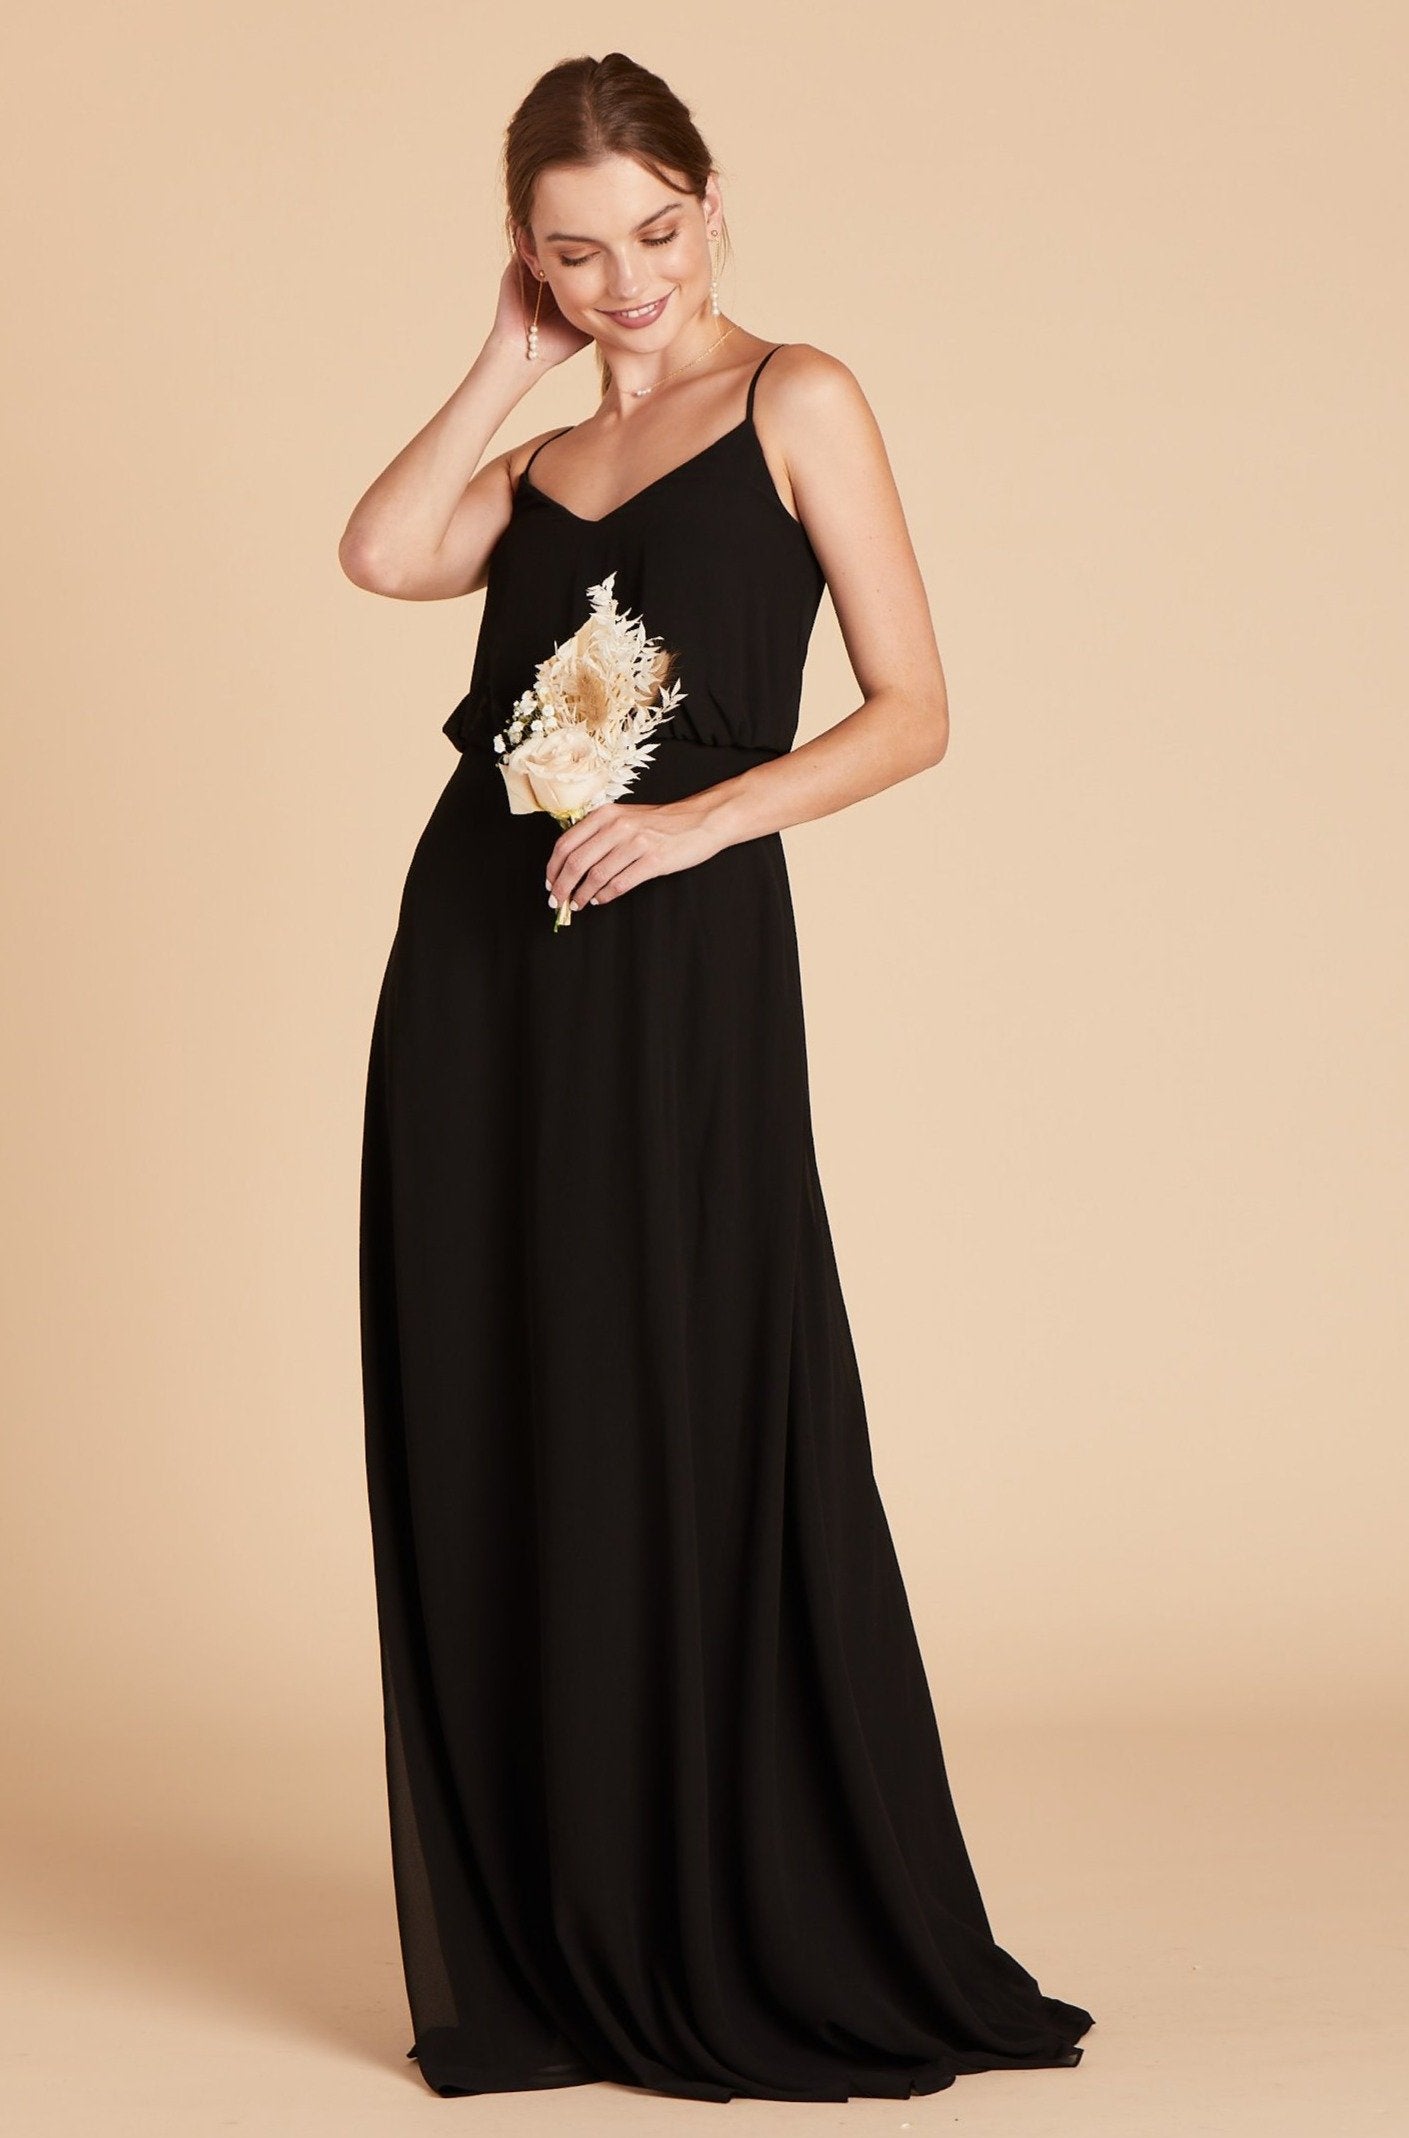 Gwennie bridesmaid dress in black chiffon by Birdy Grey, front view